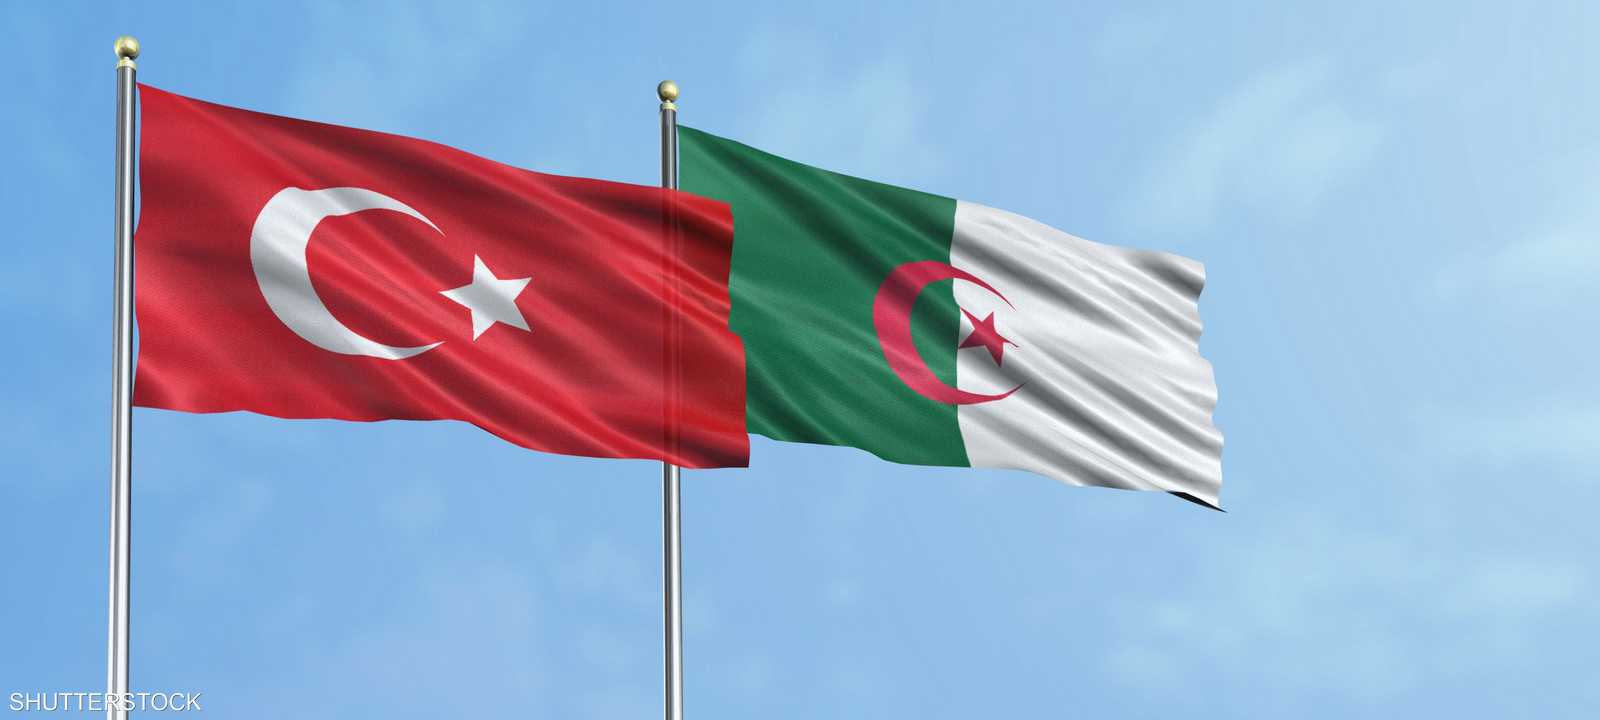 علم دولتي الجزائر وتركيا